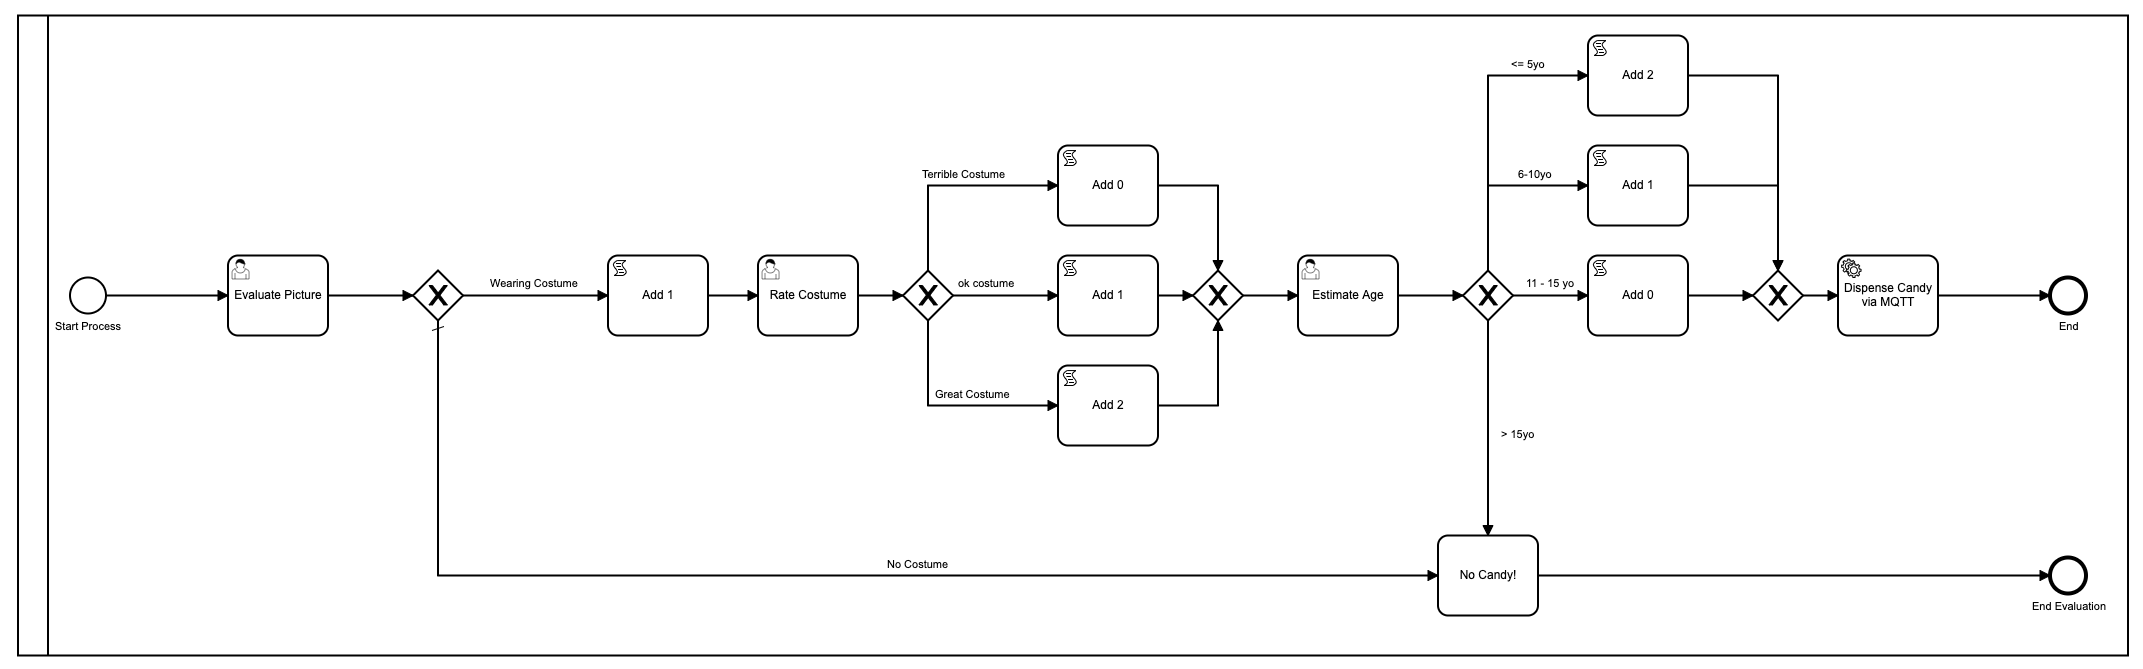 Modèle BPMN avec plusieurs étapes et 3 tâches humaines